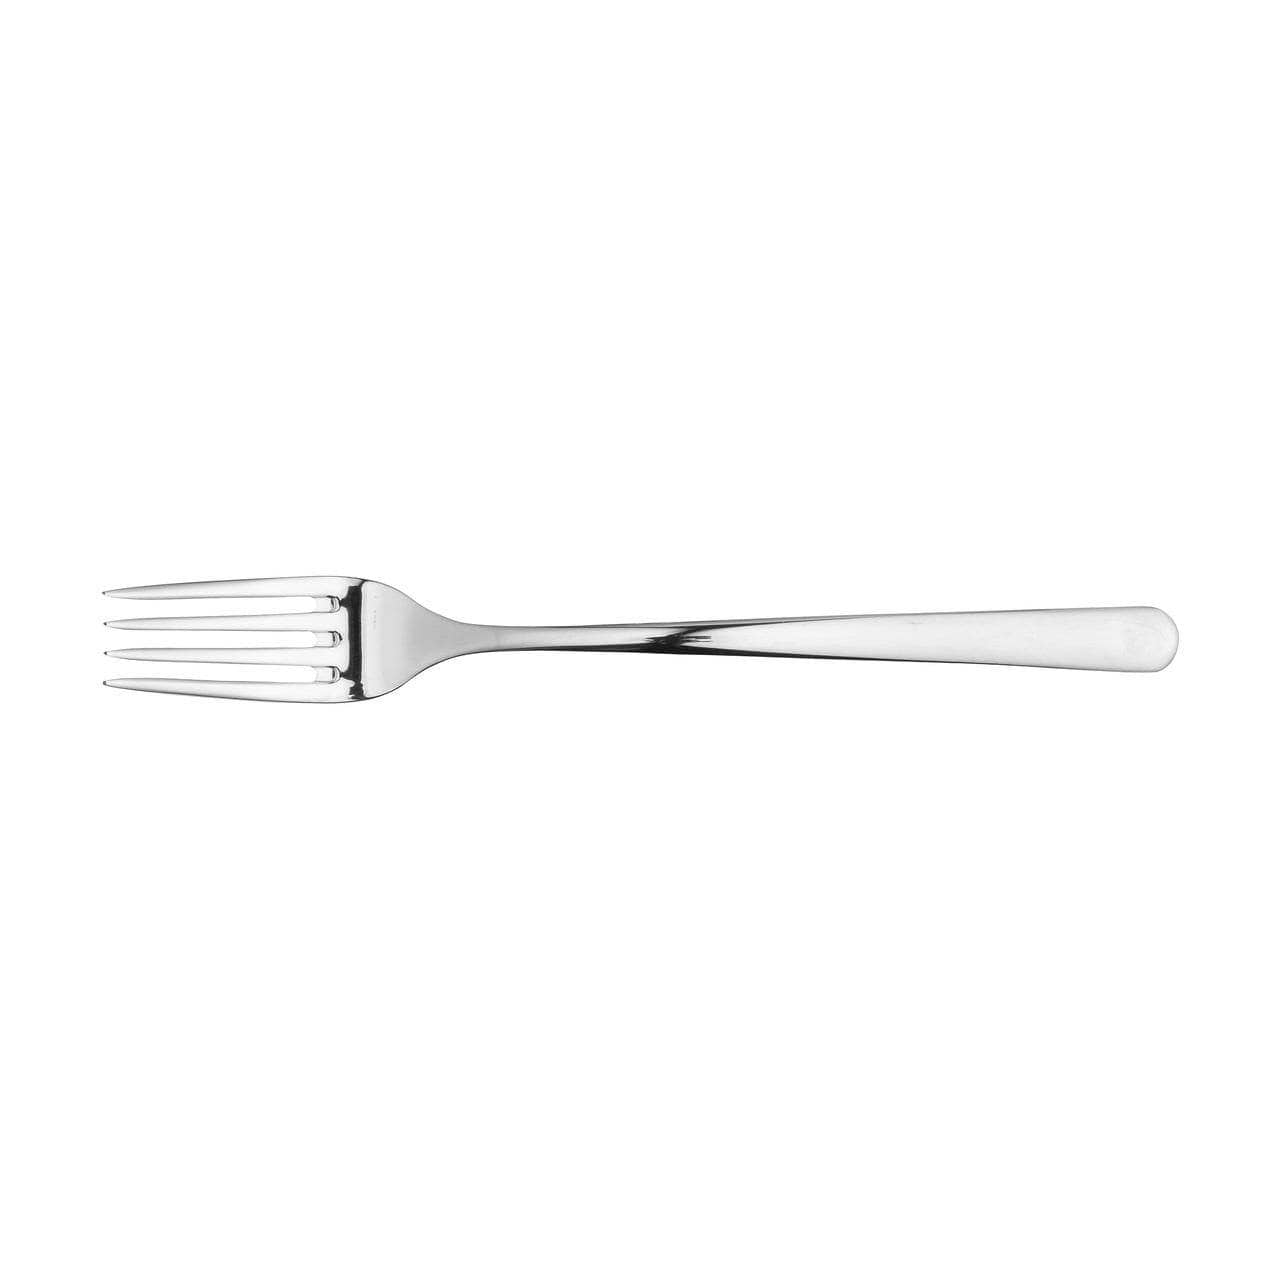 Kitchenware  -  Kendal 16 Piece Cutlery Set  -  60008050